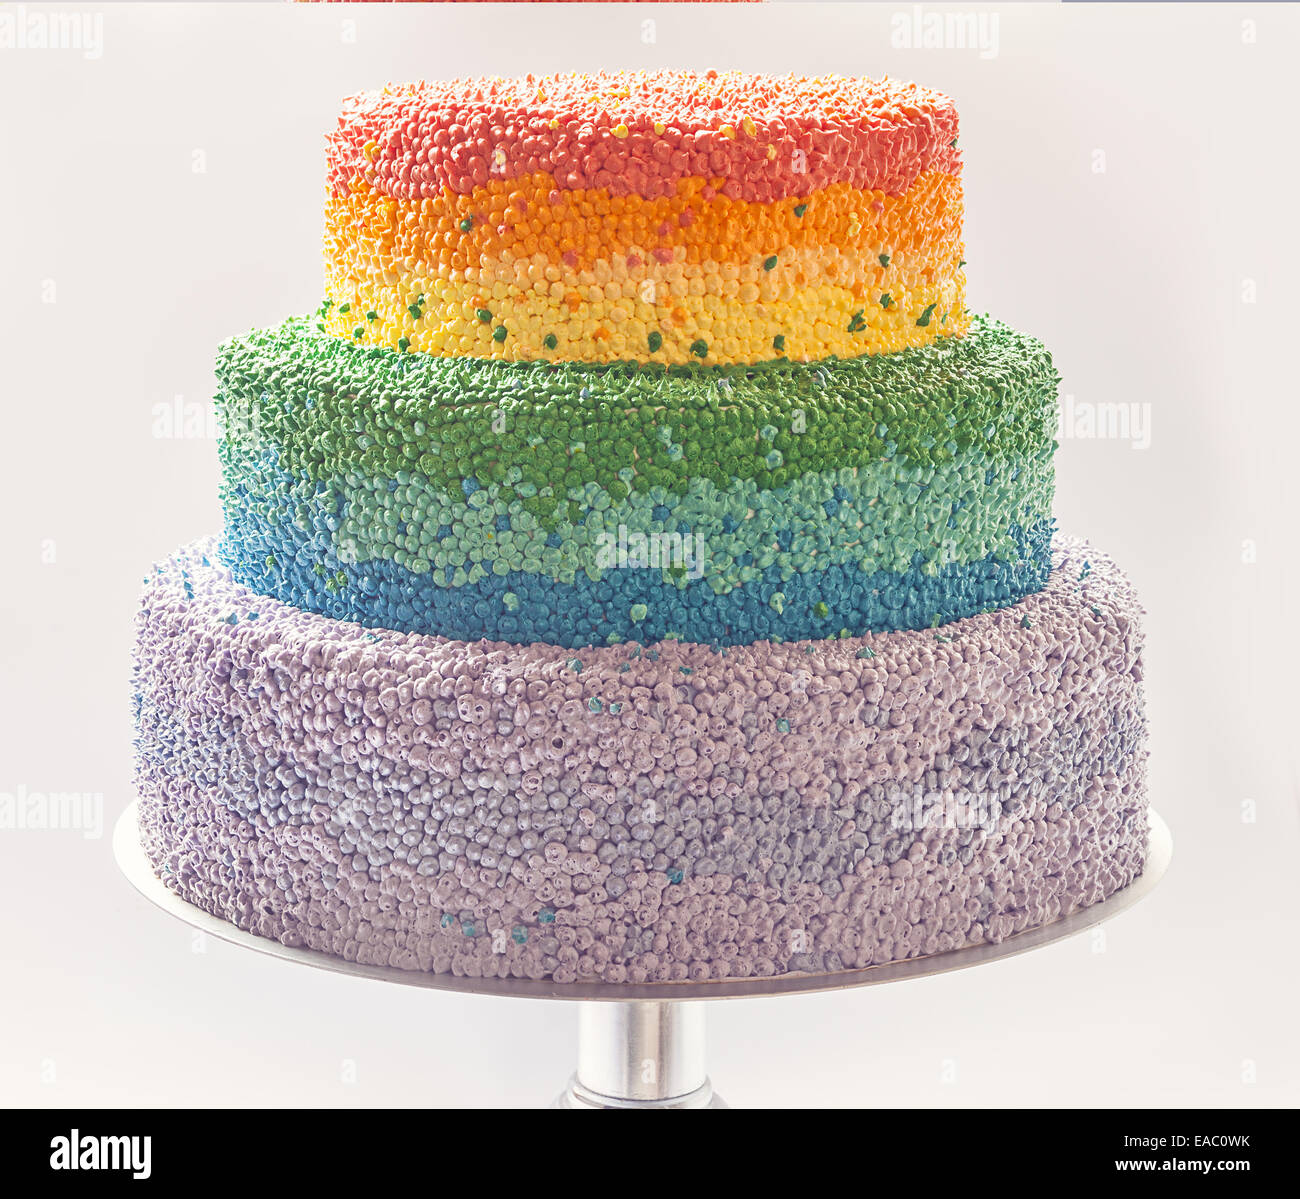 Dettagli di una torta di compleanno decorata con crema nei colori dell'arcobaleno. Foto Stock